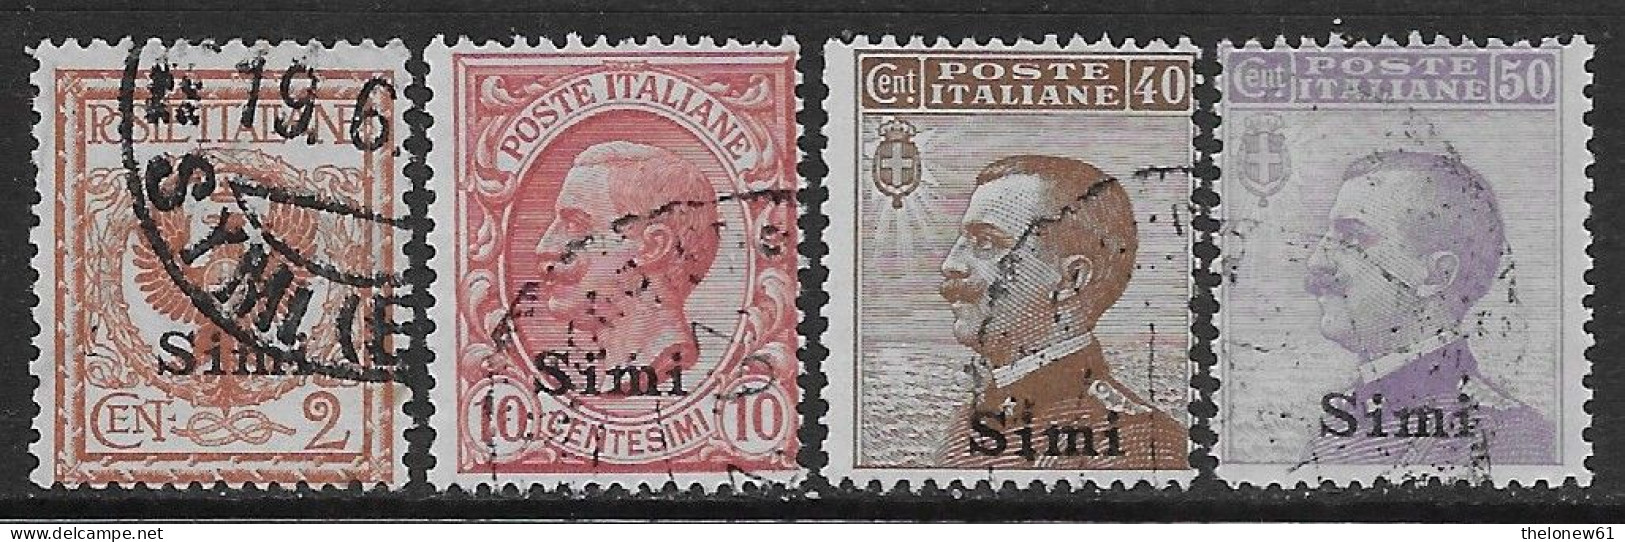 Italia Italy 1912 Colonie Egeo Simi Effigie 4val Sa N.1,3,6-7 US - Egeo (Simi)